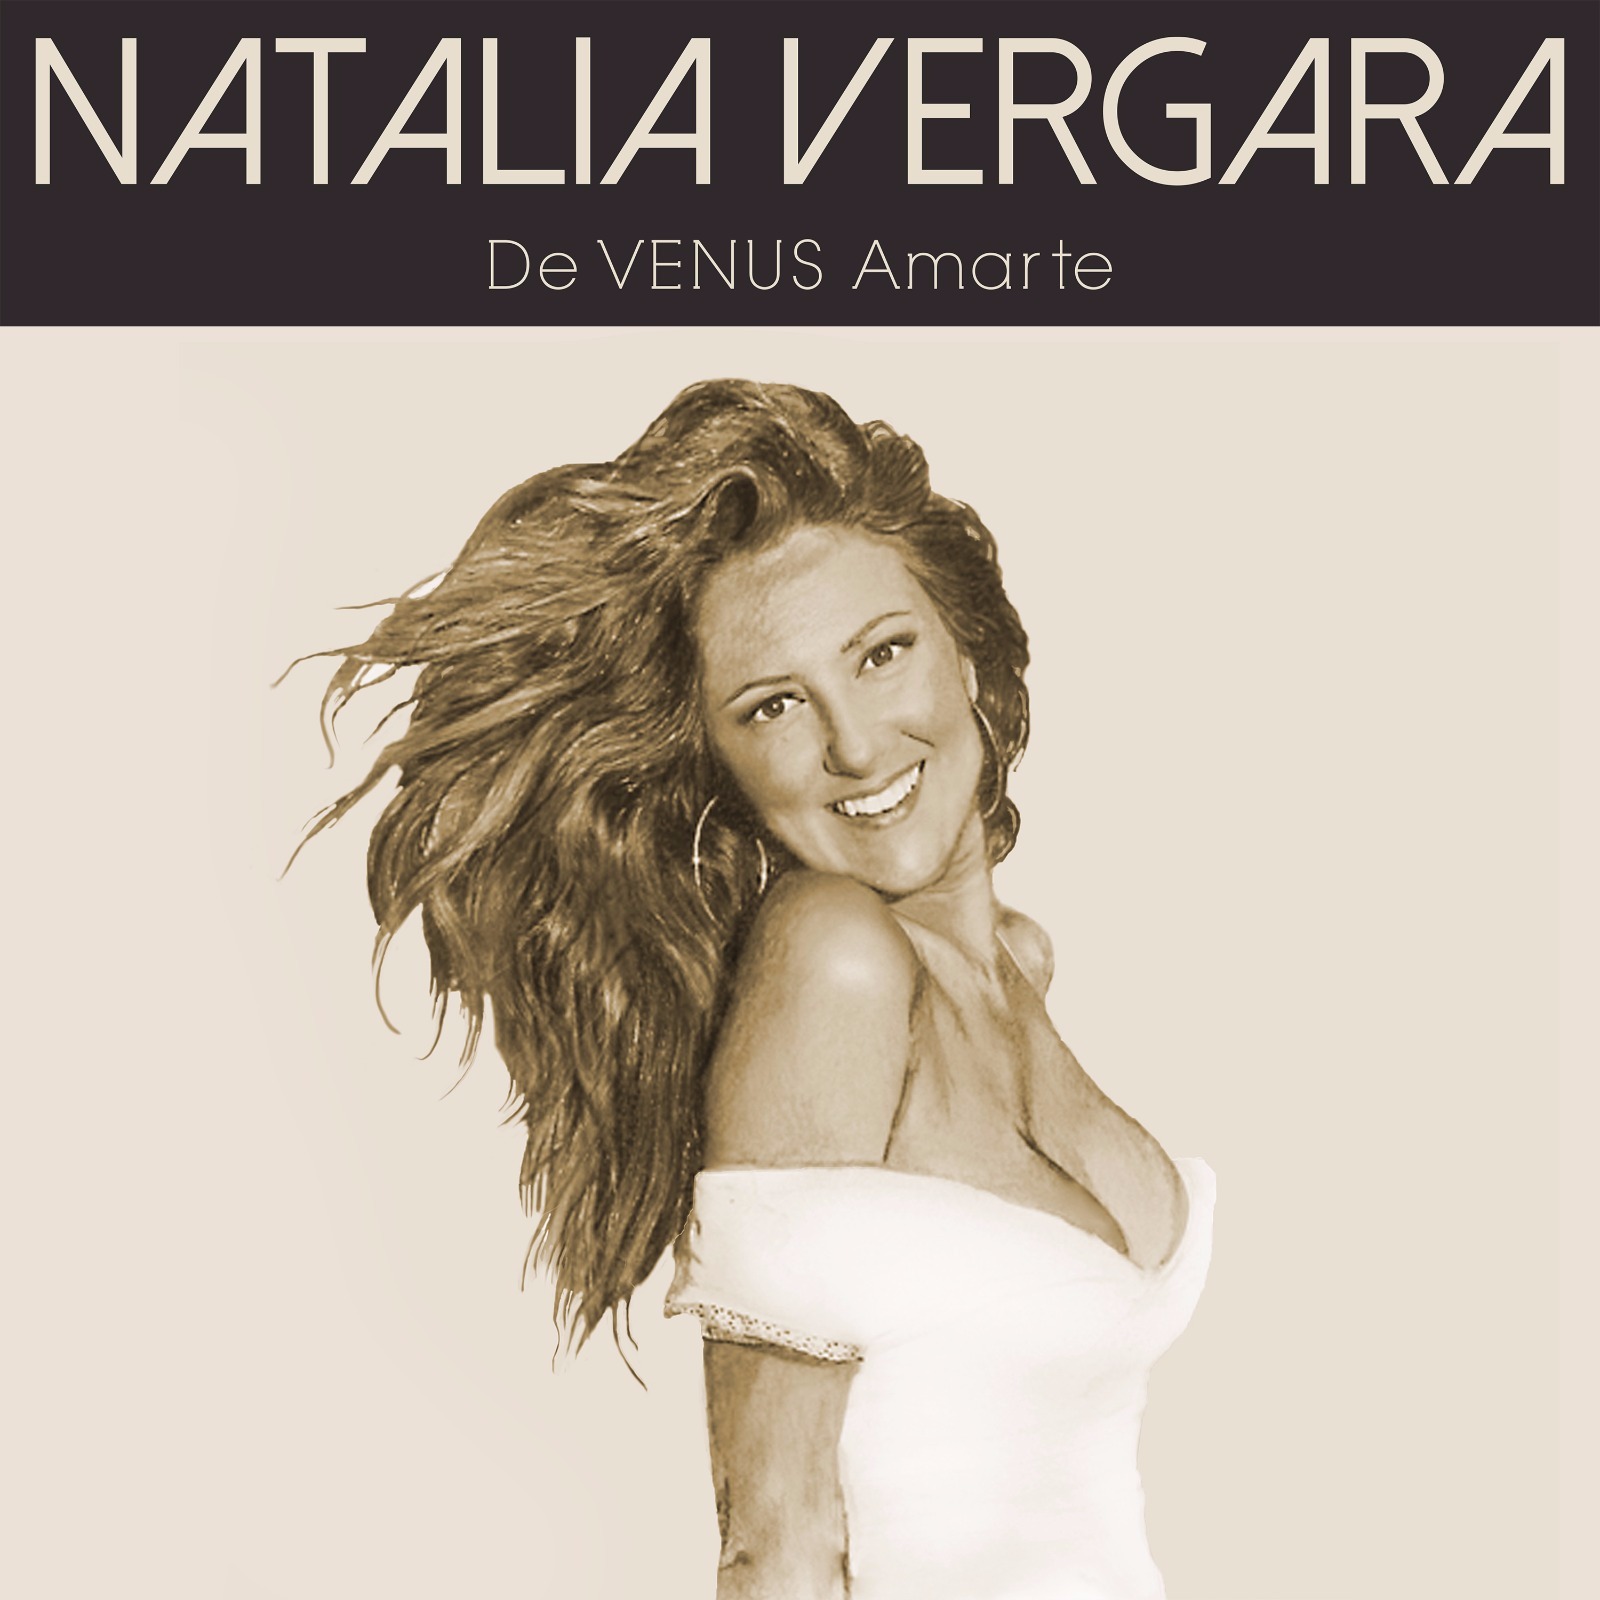 Single "De Venus Amarte"